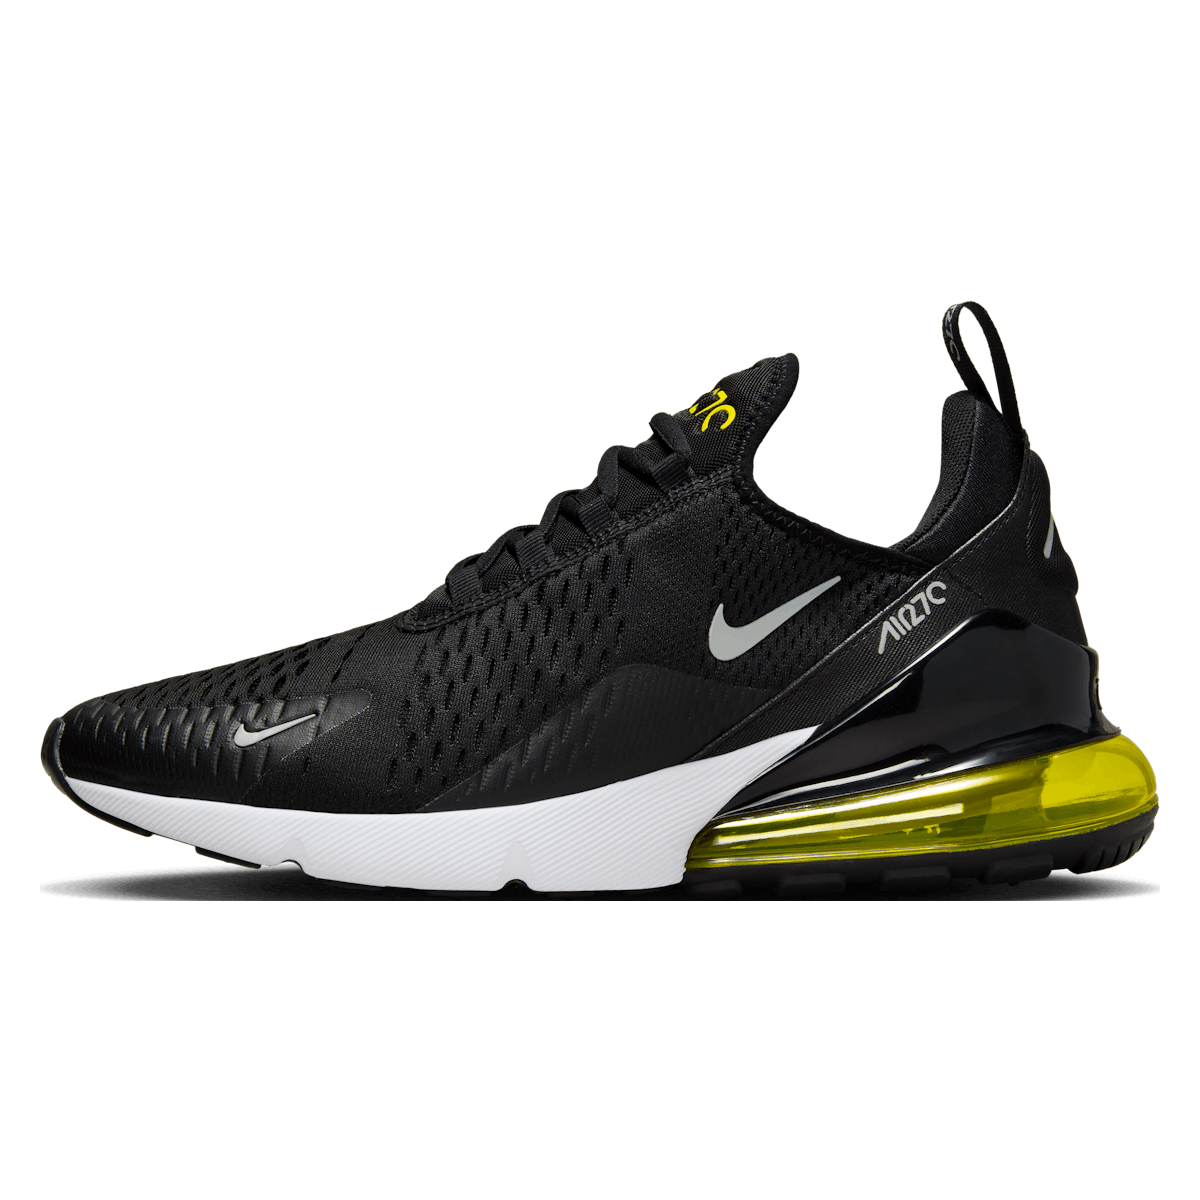 Nike Air Max 270 "Black Opti Yellow"